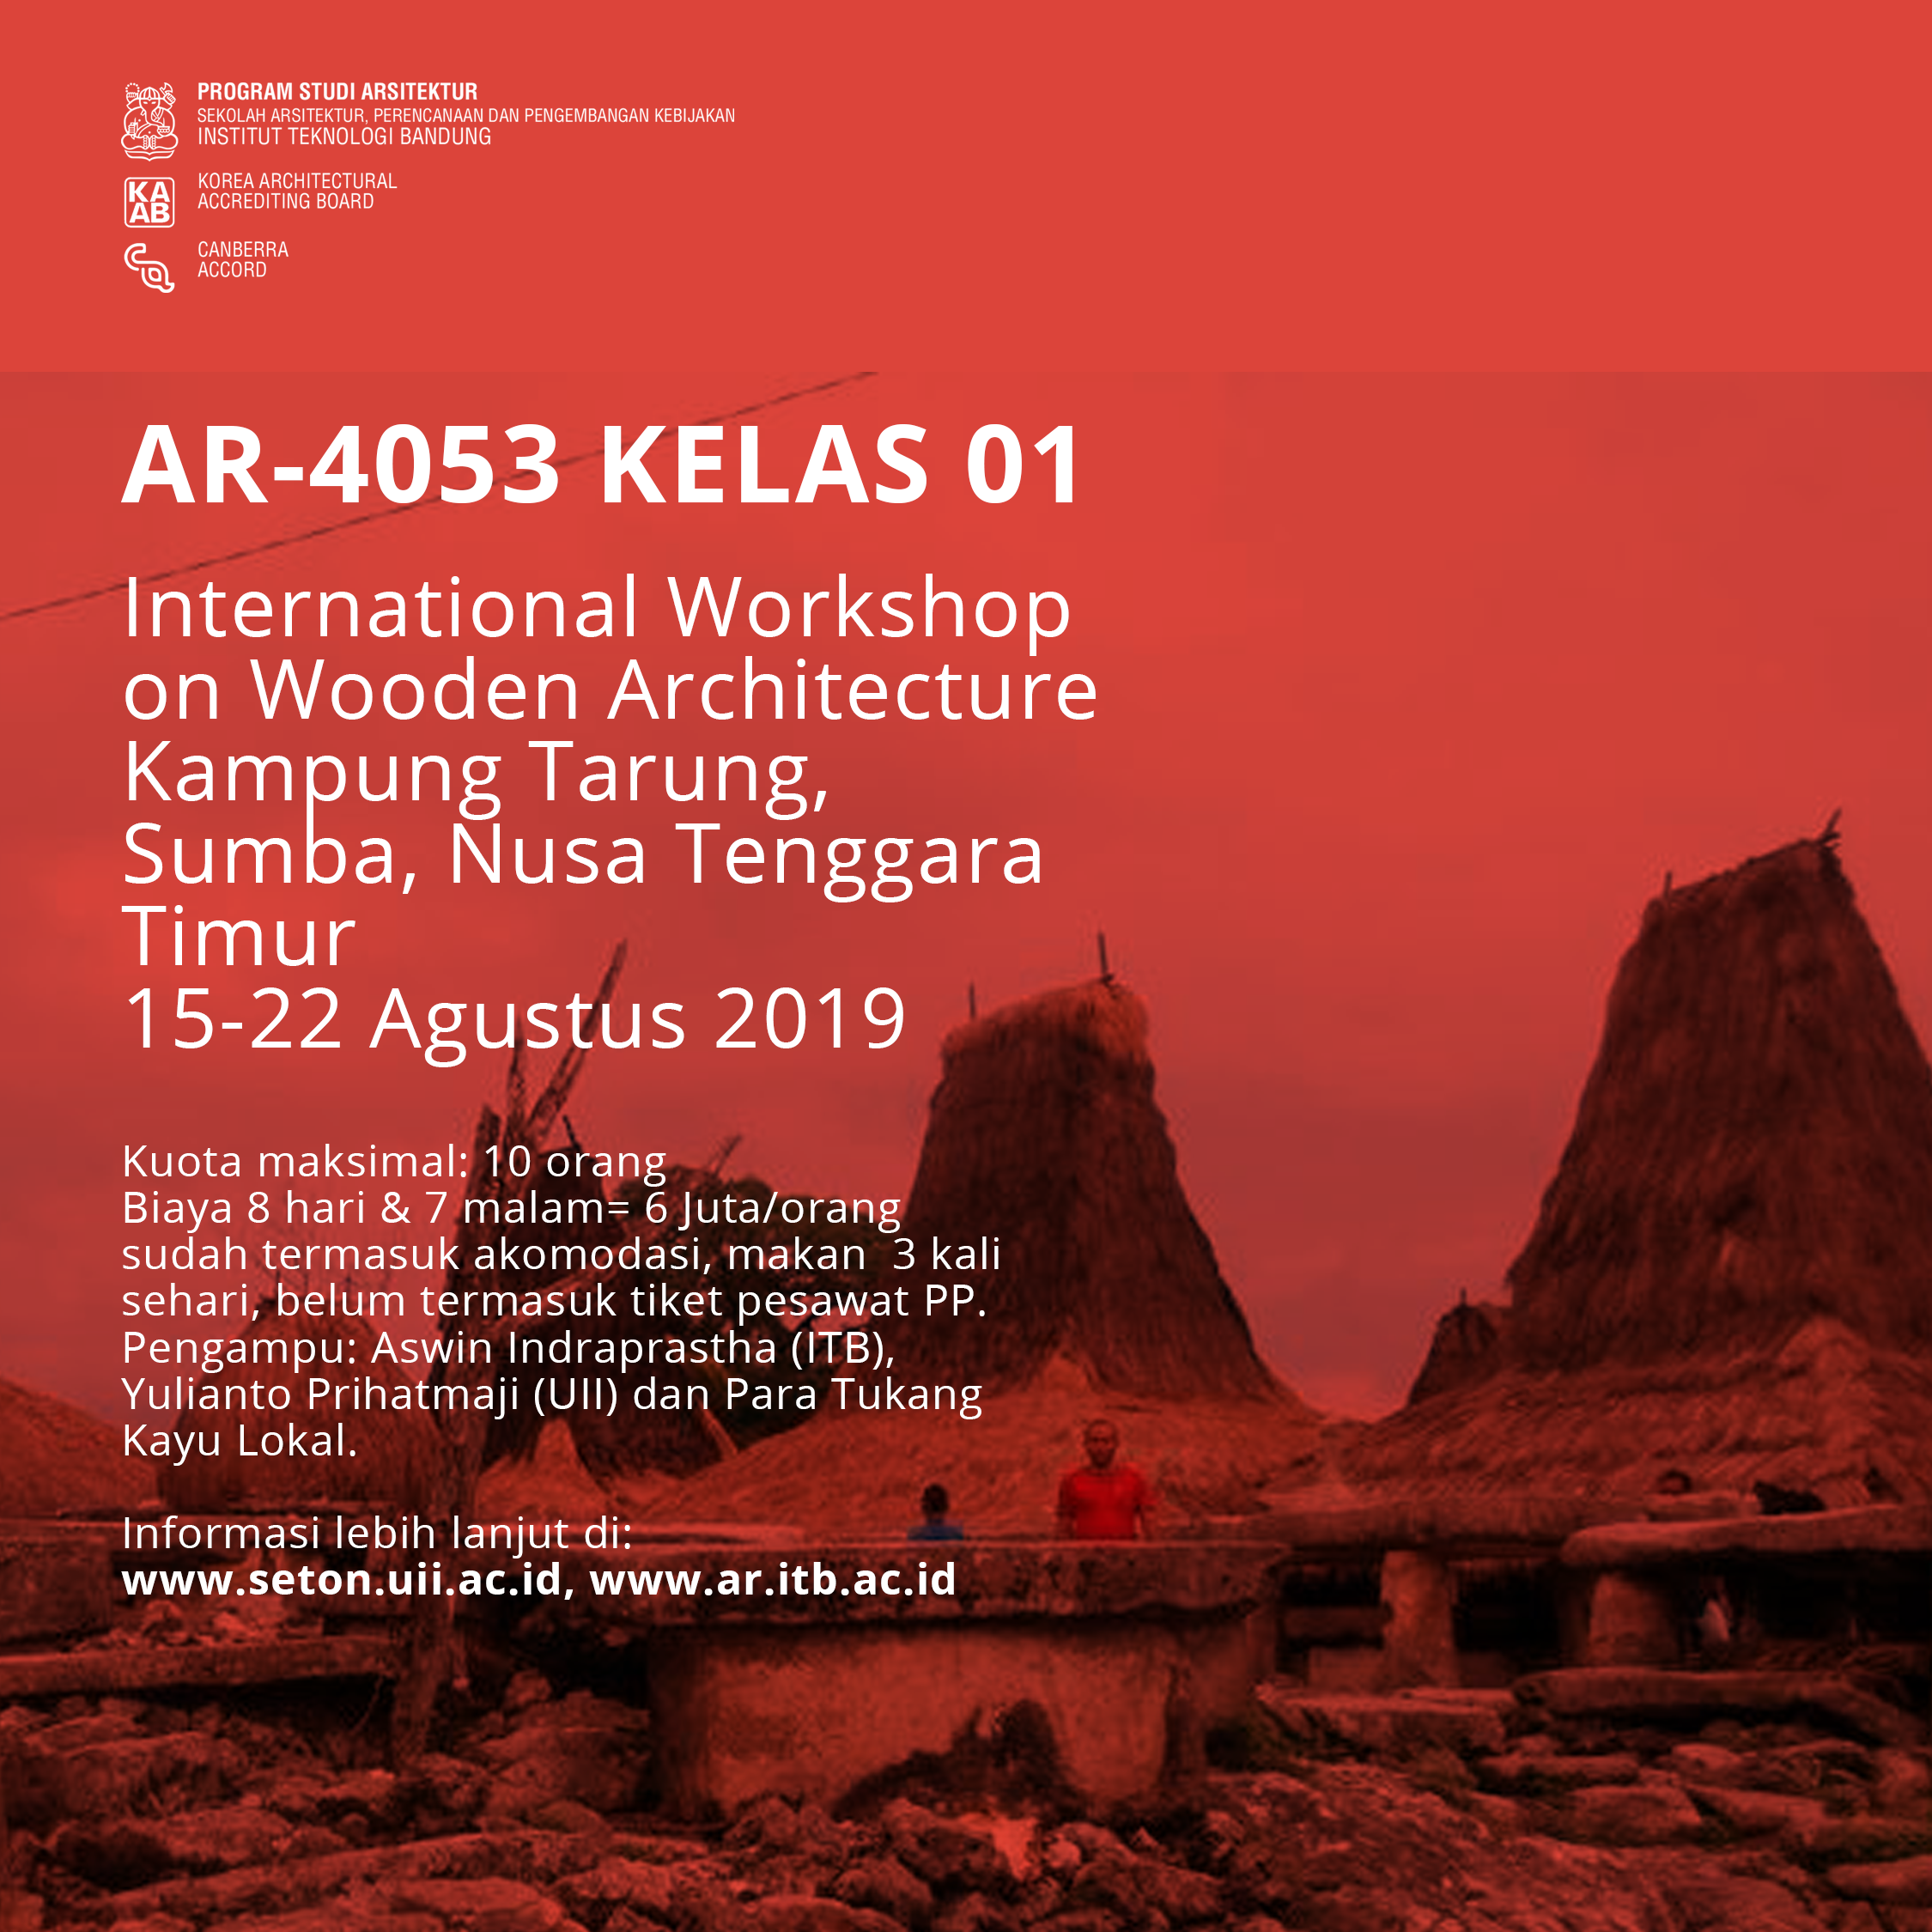 International Workshop on Wooden Architecture (IWWA) 29019: Kampung tarung, Sumba, Nusa Tenggara Timur